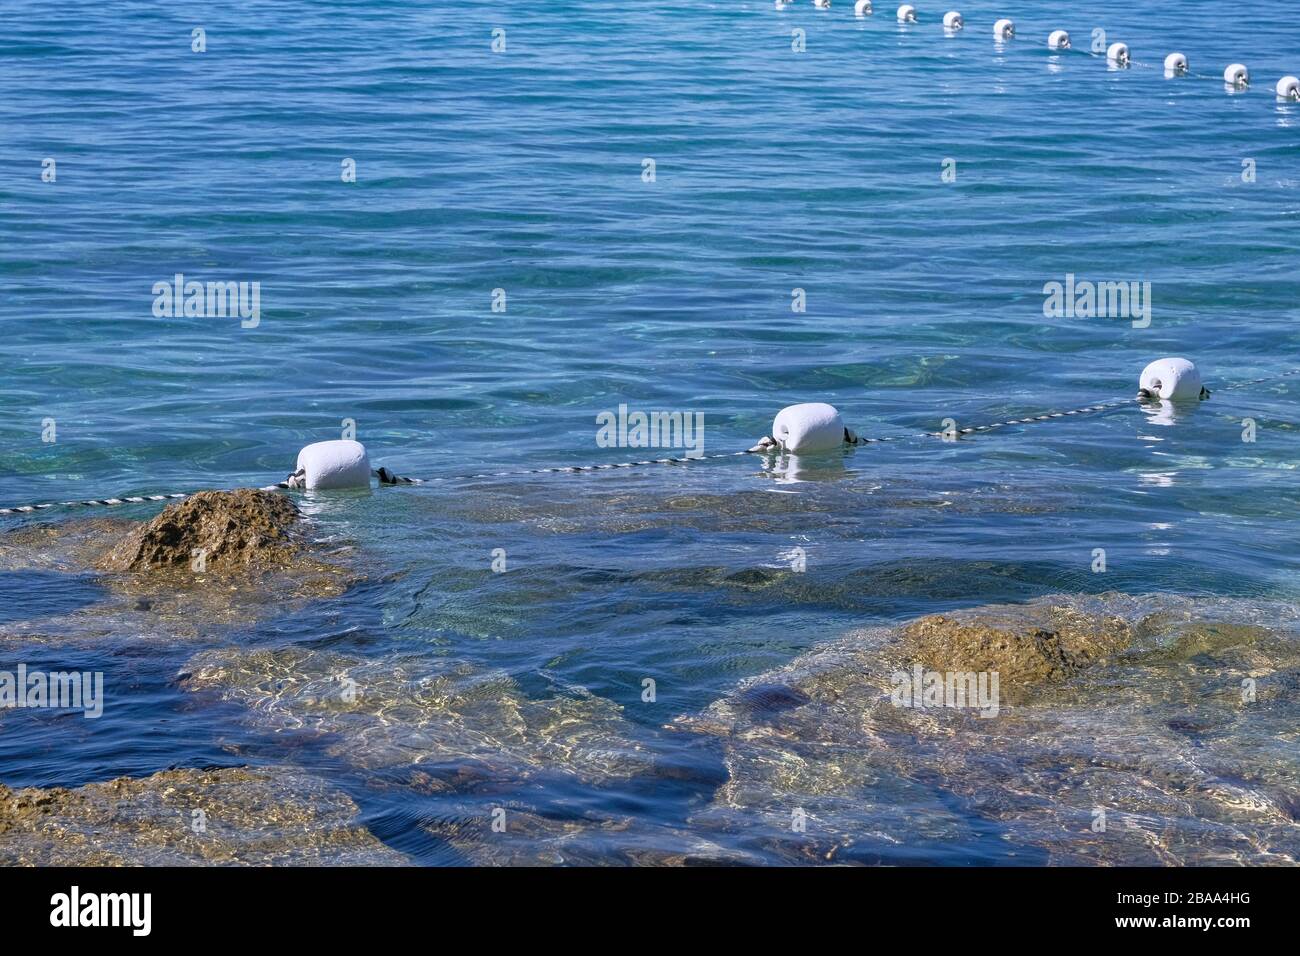 Il galleggiante tiene il cavo in acqua blu, in primo piano. Boa bianca in plastica nel mare blu. Paesaggio di mare in estate. Foto Stock